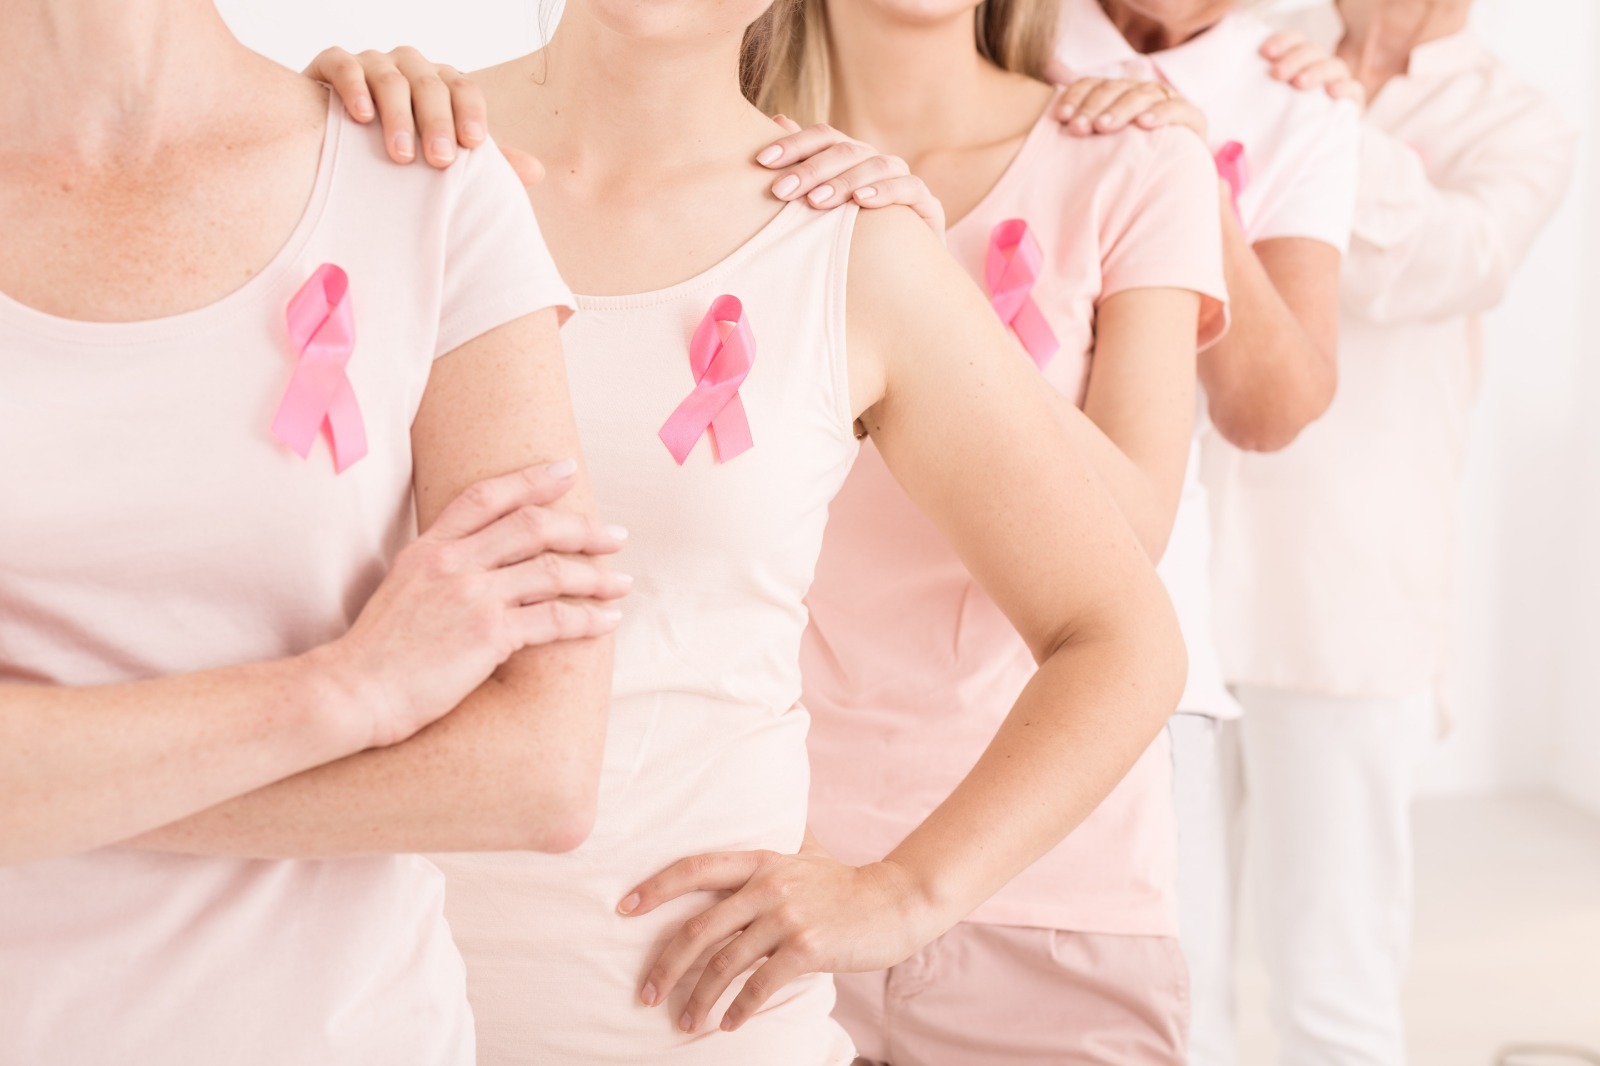 服務範圍-女士乳房健康篩查服務 Breast Screening